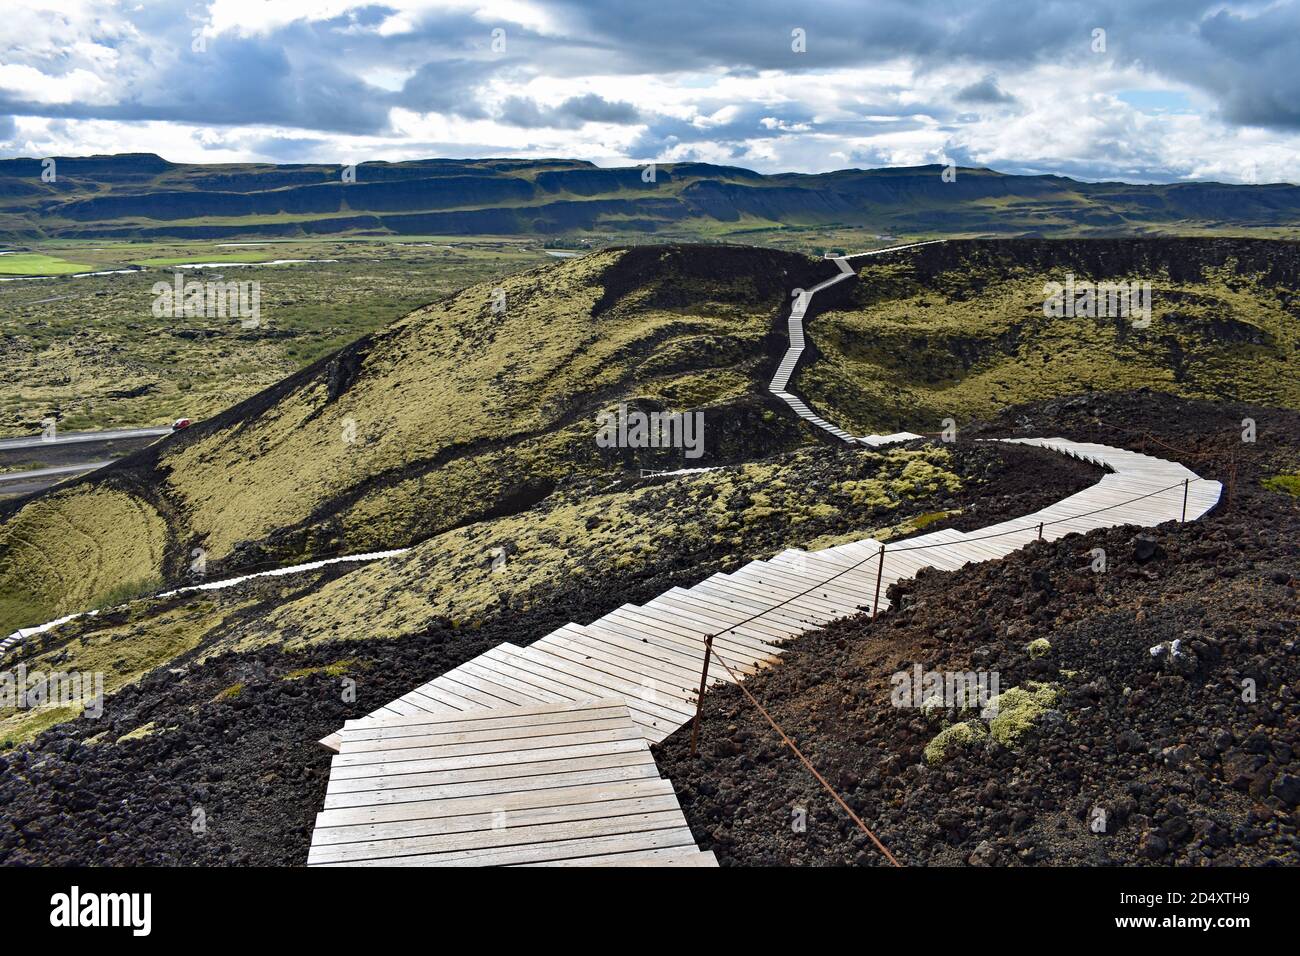 Una passerella in legno si snoda intorno al bordo del Cratere del Vulcano Grabrok nella Valle di Nordurardalur, nell'Islanda occidentale. Il muschio verde copre la roccia nera. Foto Stock